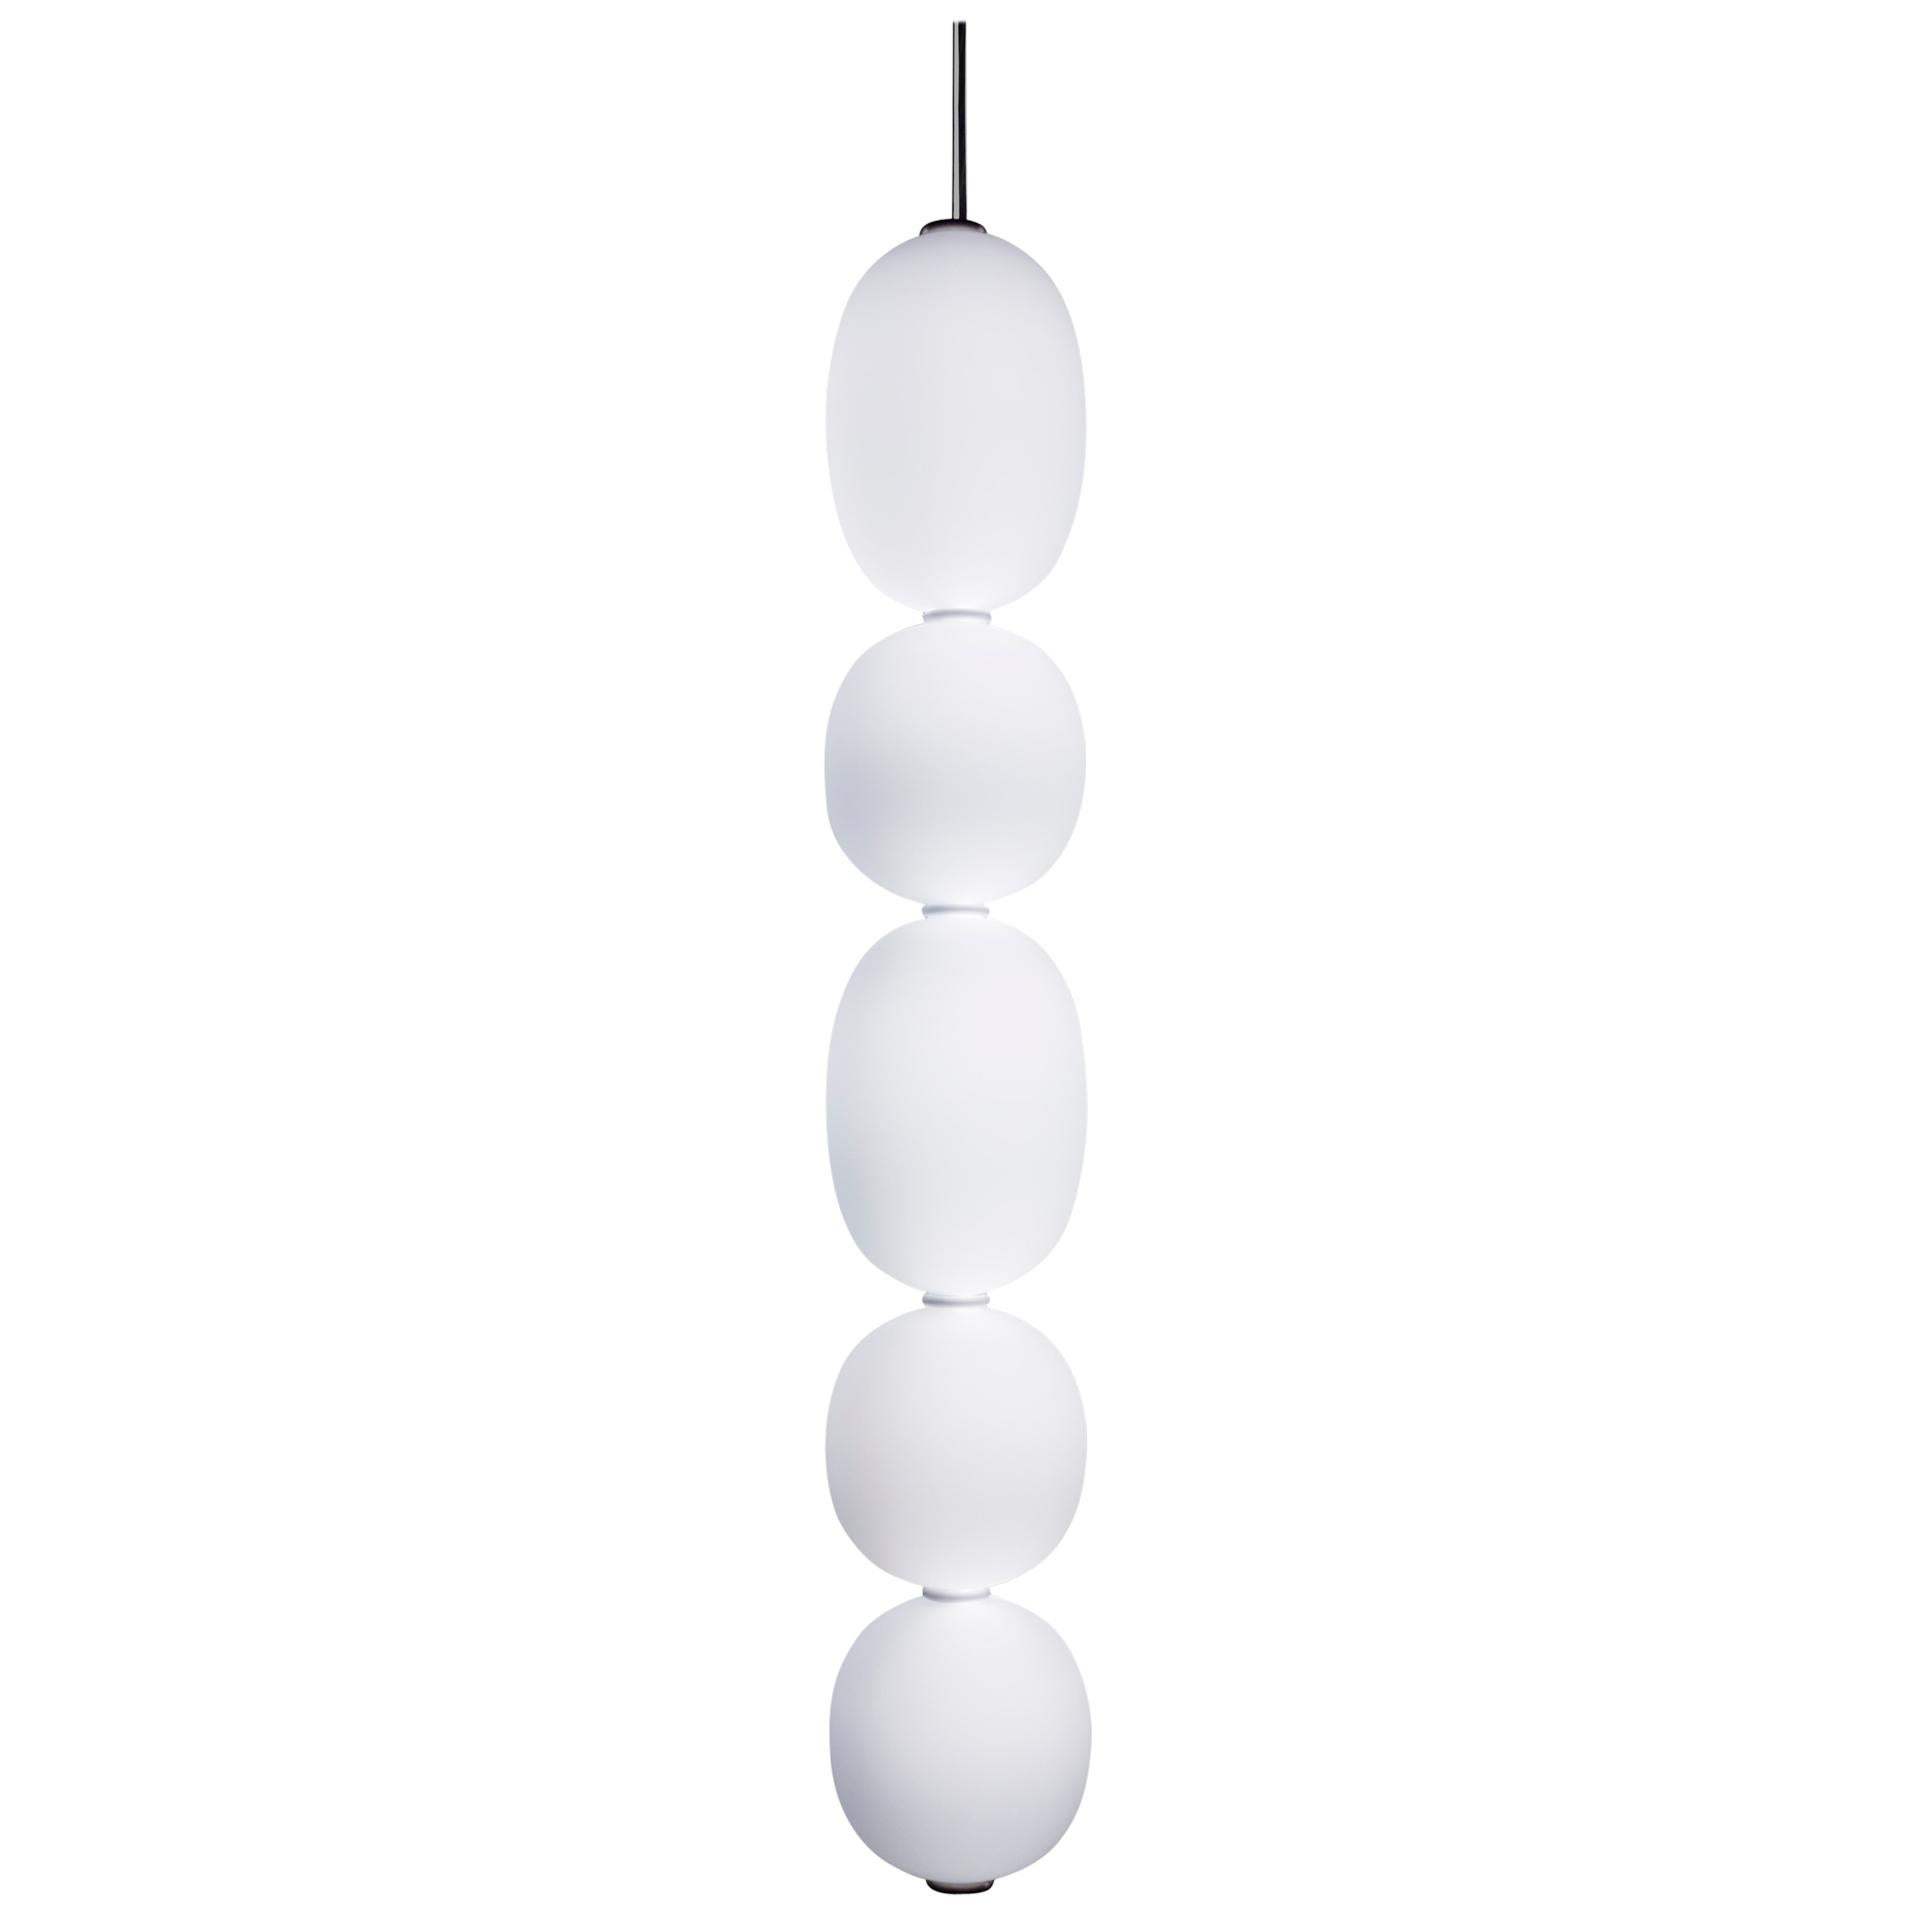 Grappa G5 by Claesson Koivisto Rune — Murano Blown Glass Pendant Lamp For Sale